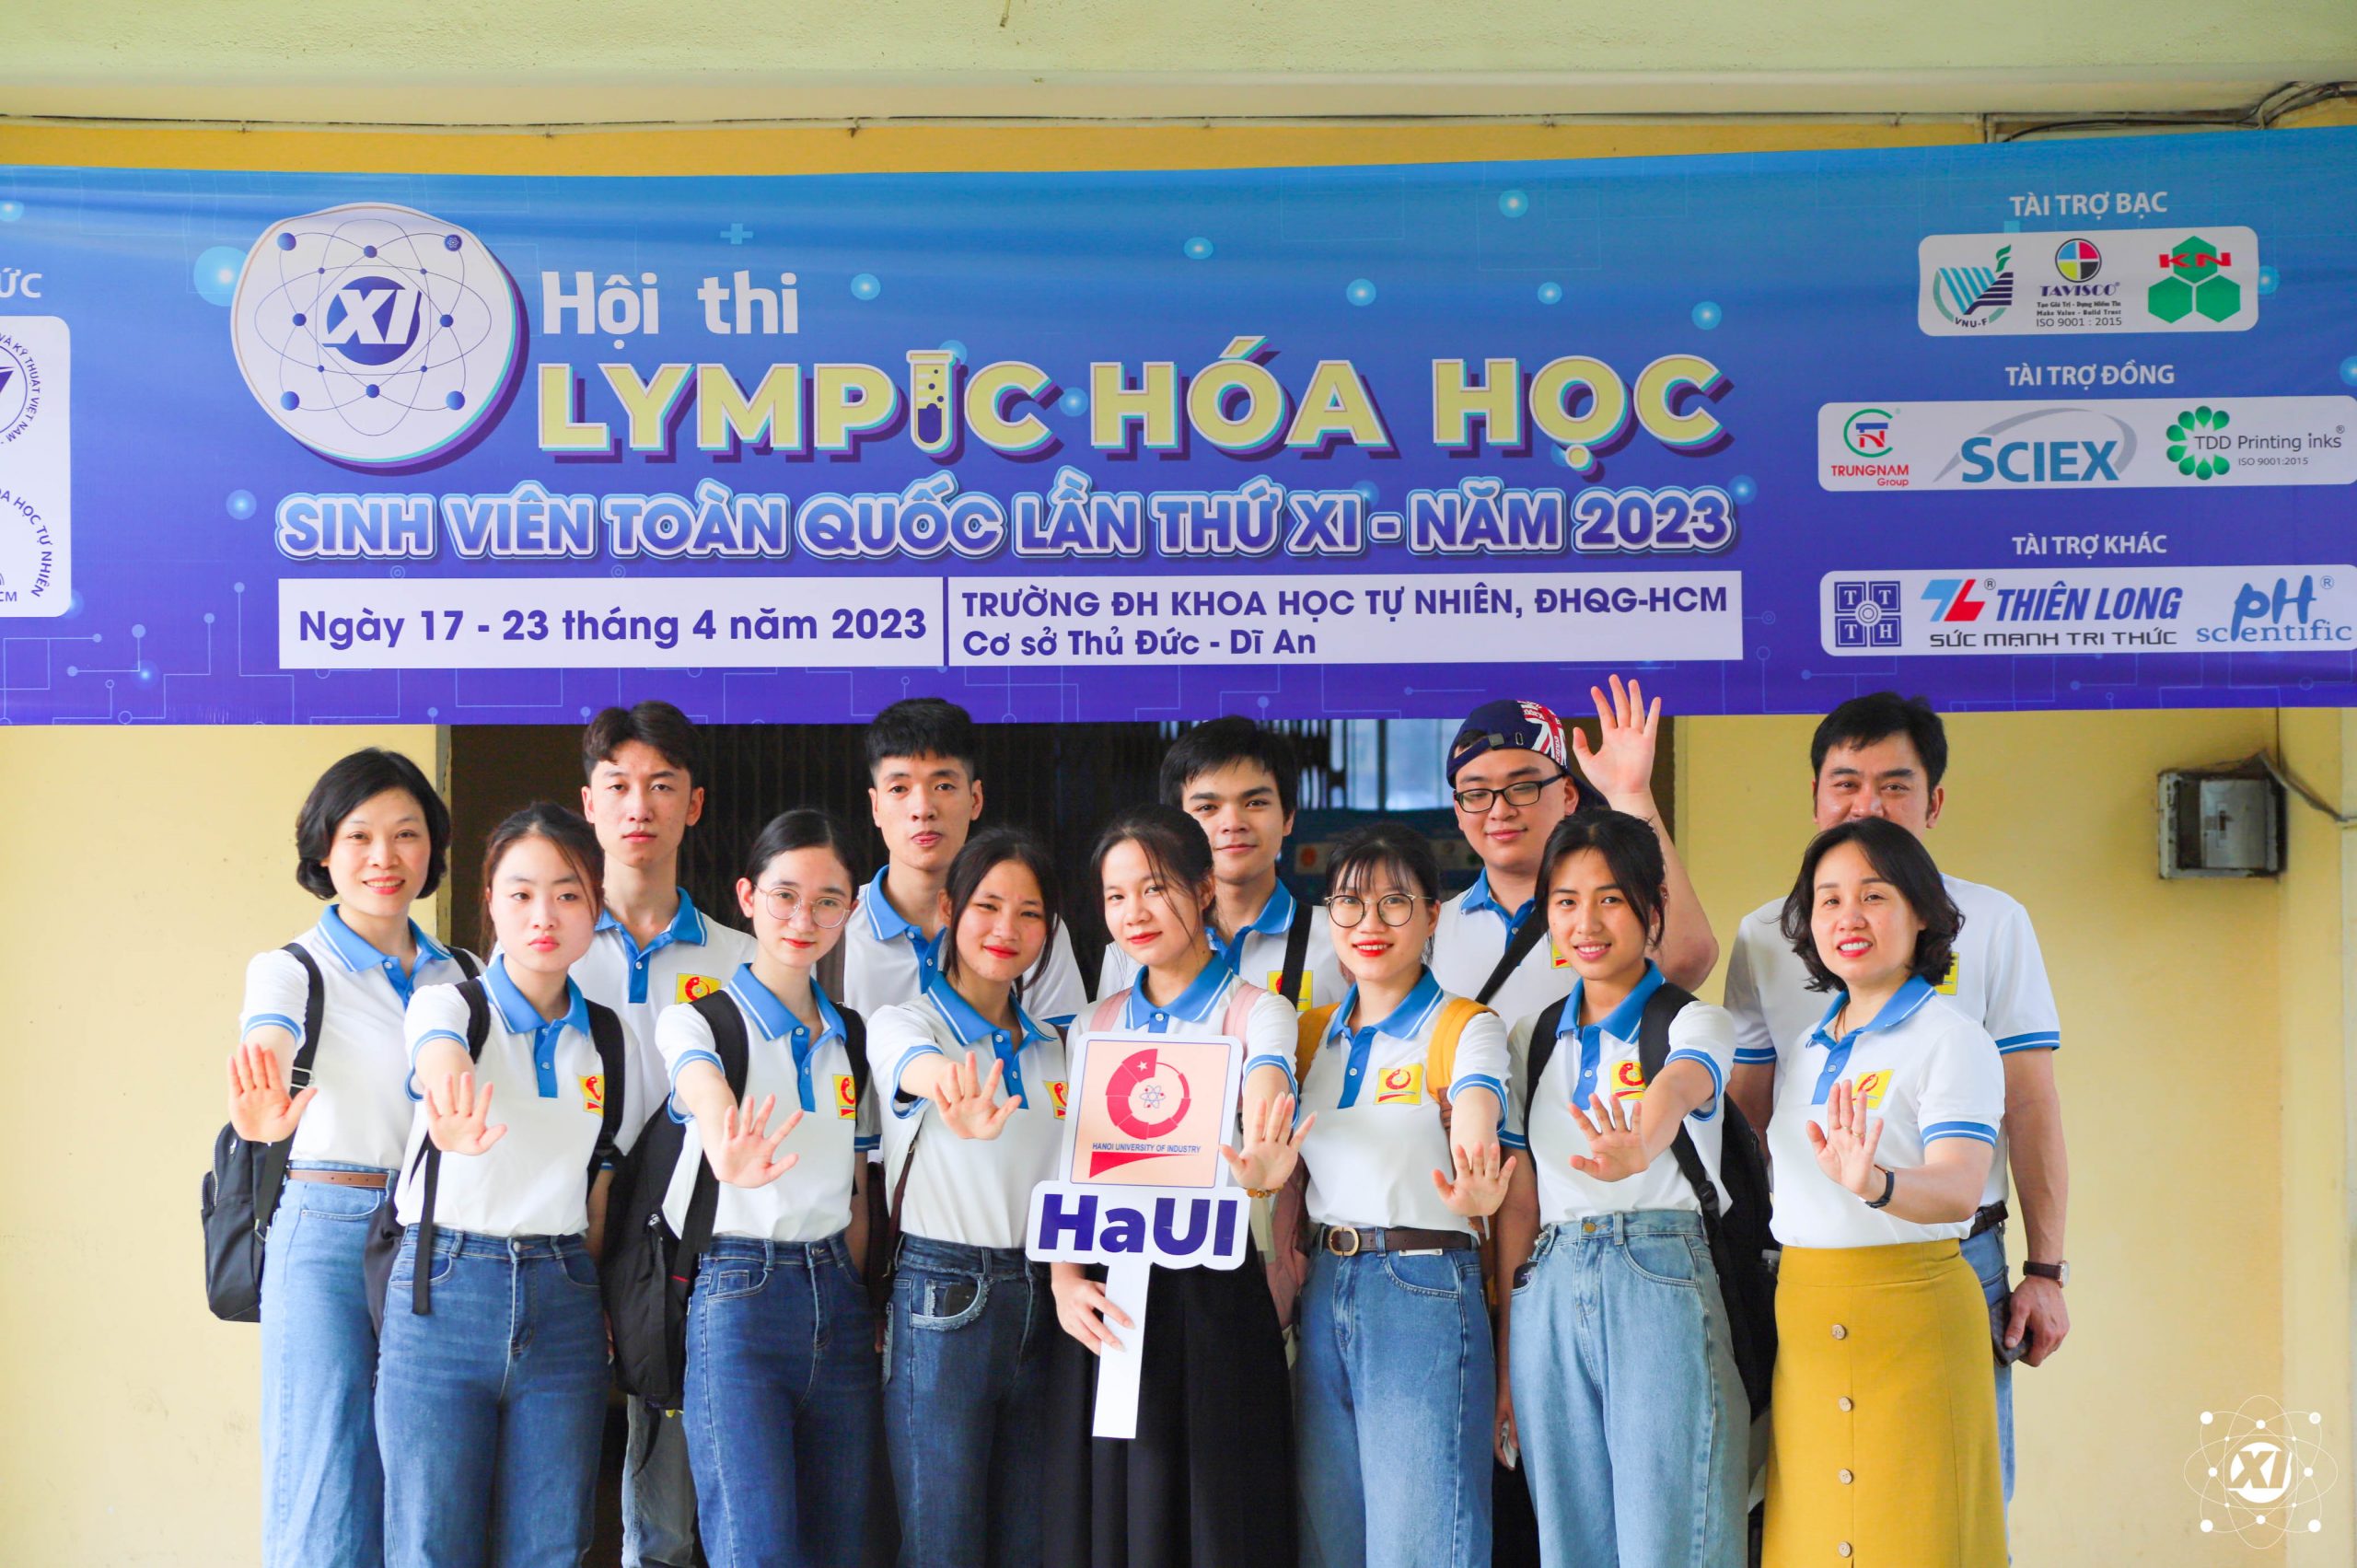 Đoàn dự thi Trường ĐH Công nghiệp Hà Nội tham quan khu vực dự thi tại trường Đại học Khoa học Tự nhiên, ĐHQG – HCM.